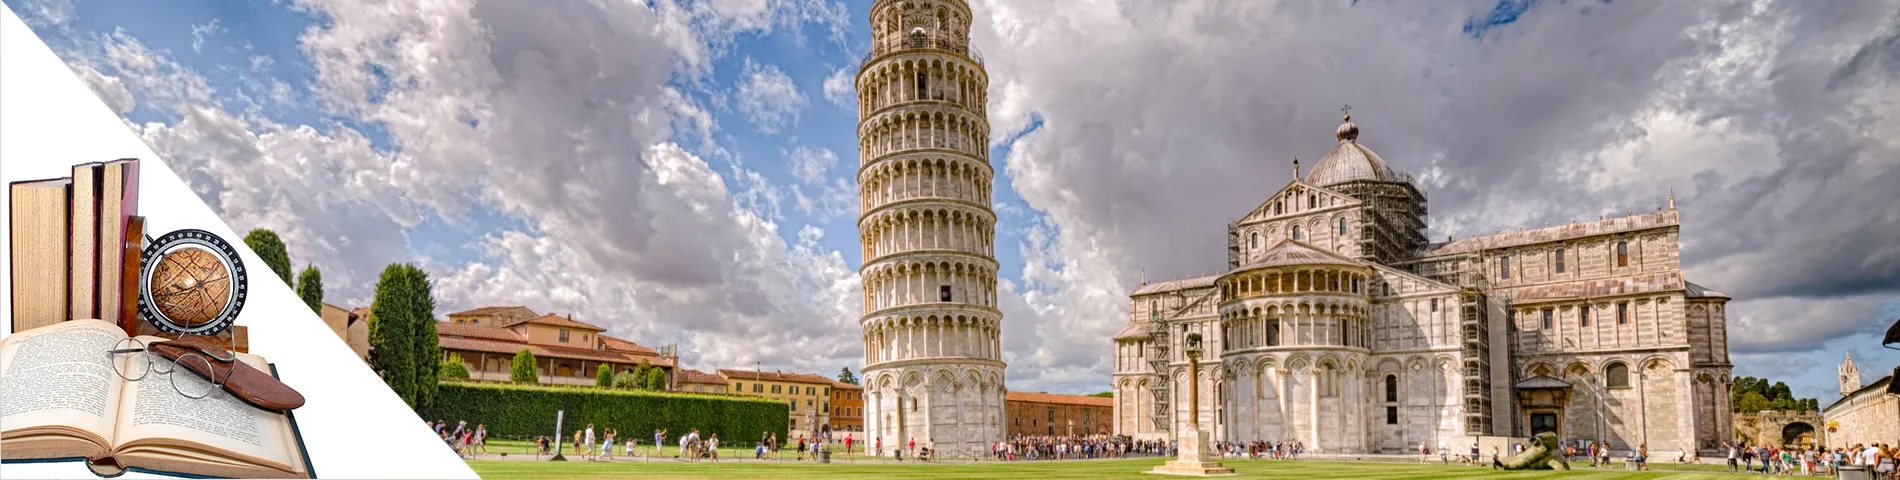 Pisa - Italiaans  & kunst / cultuur